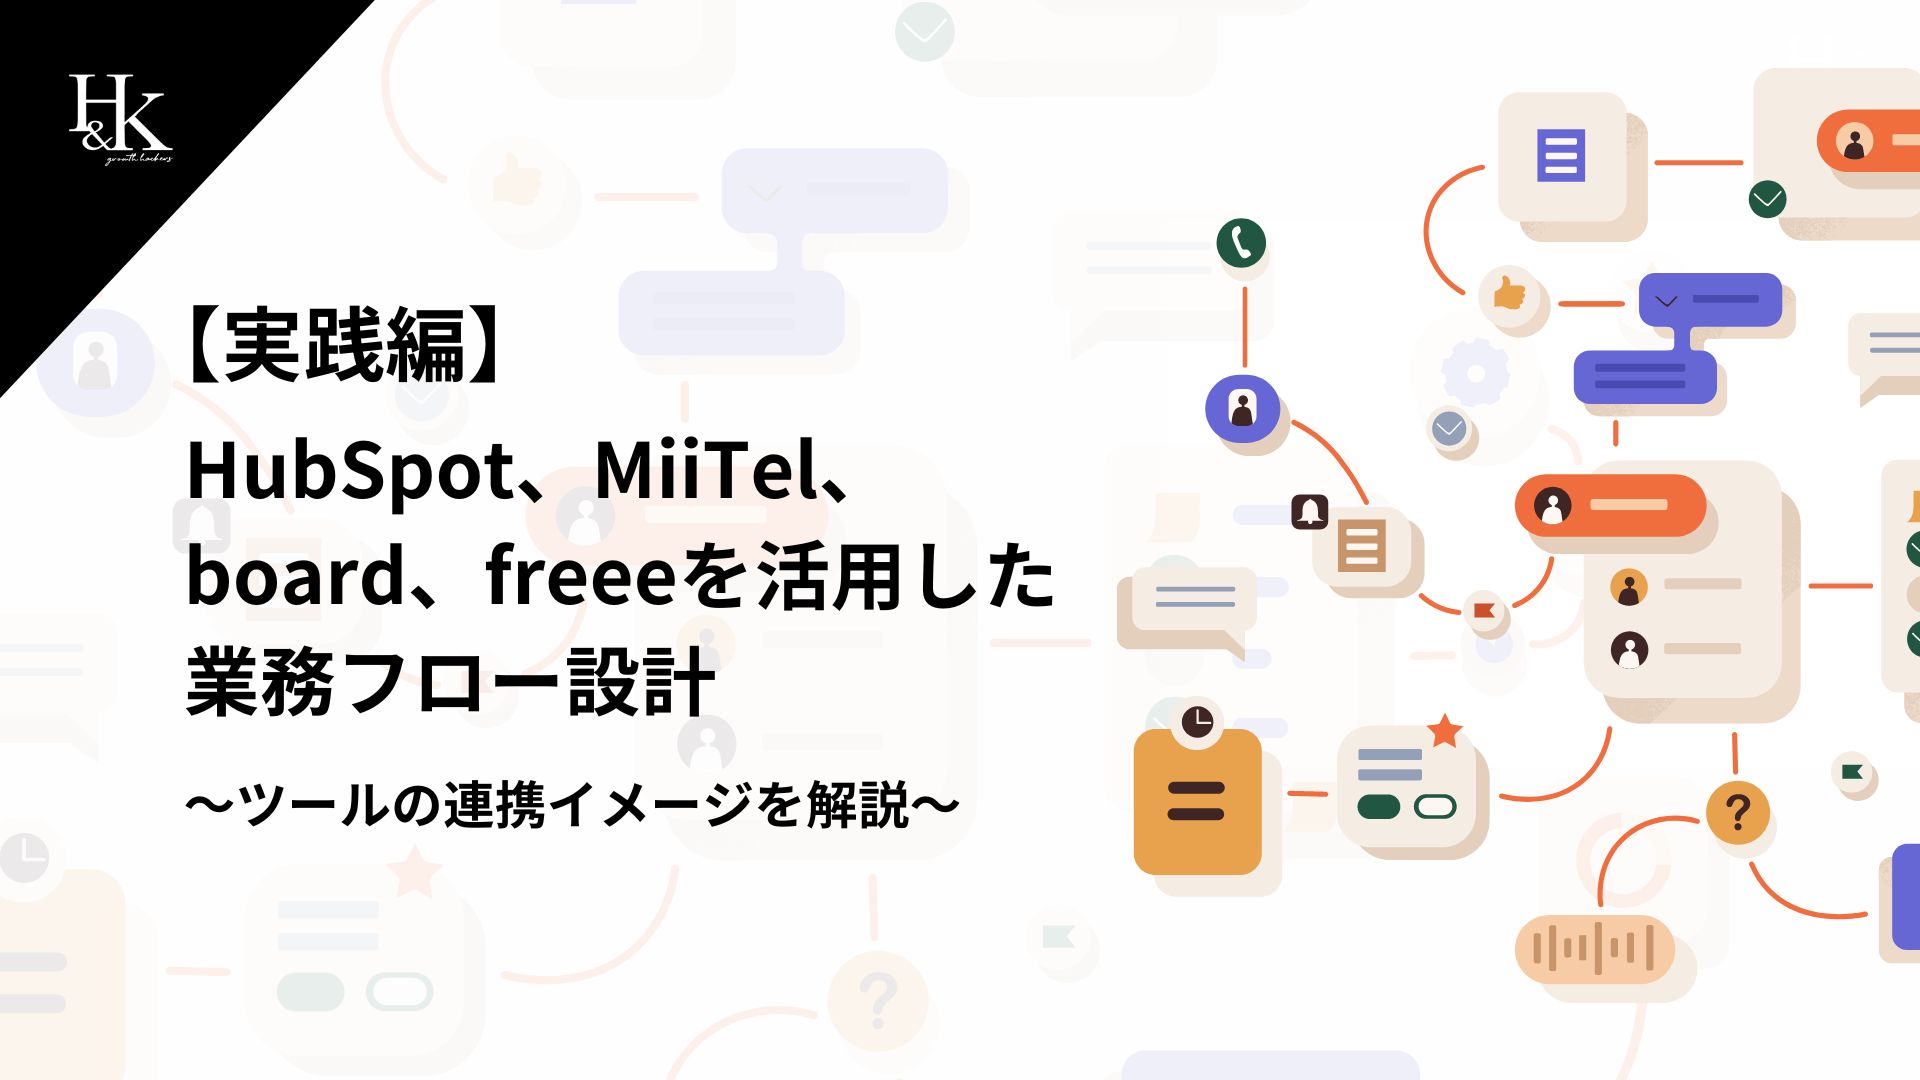 【実践編】HubSpot、MiiTel、board、freeeを活用した 業務フロー設計〜ツールの連携イメージを解説〜 (1)